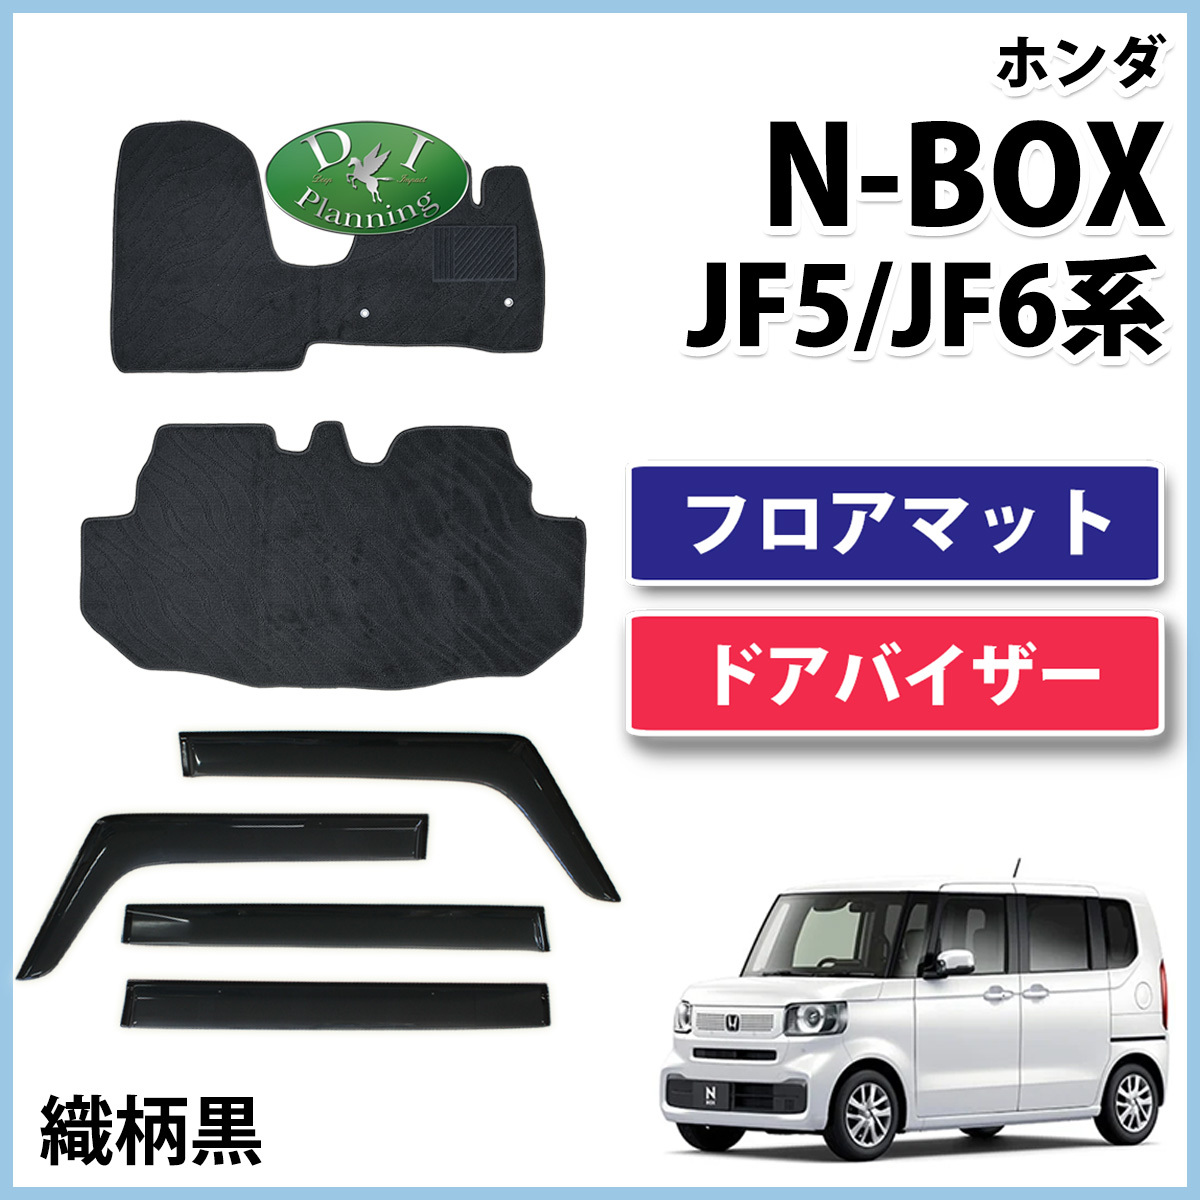 新型 N-BOX NBOXカスタム JF5 JF6 フロアマット & ドアバイザー 織柄黒 社外新品 フロアーマット フロアカーペット 自動車パーツ カー用品_画像1